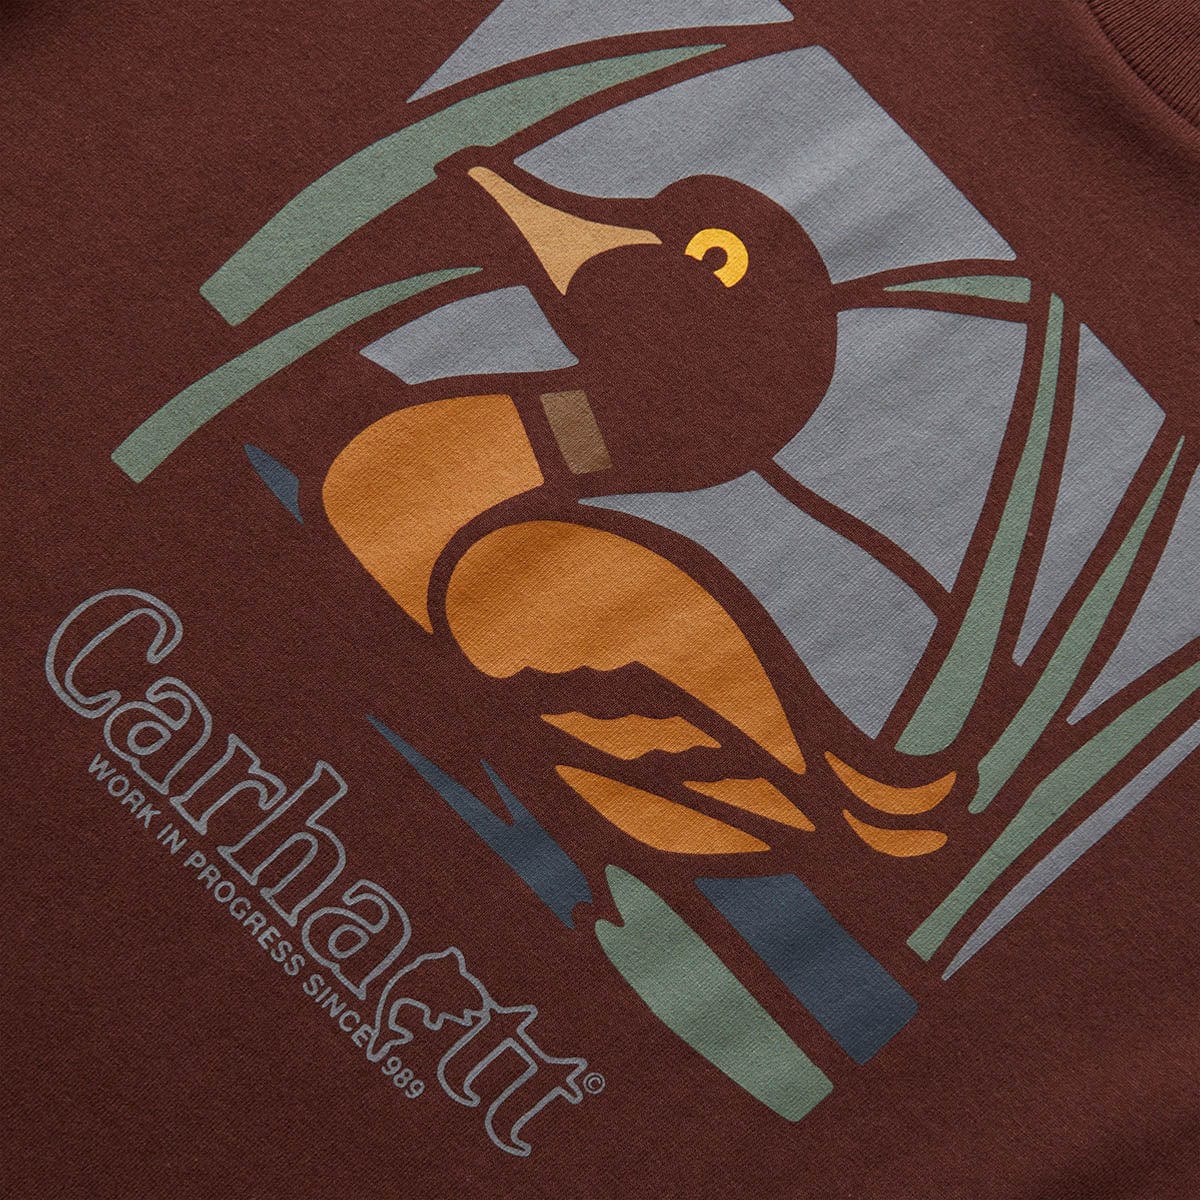 T-shirt Carhartt WIP Duck - T-shirts homme